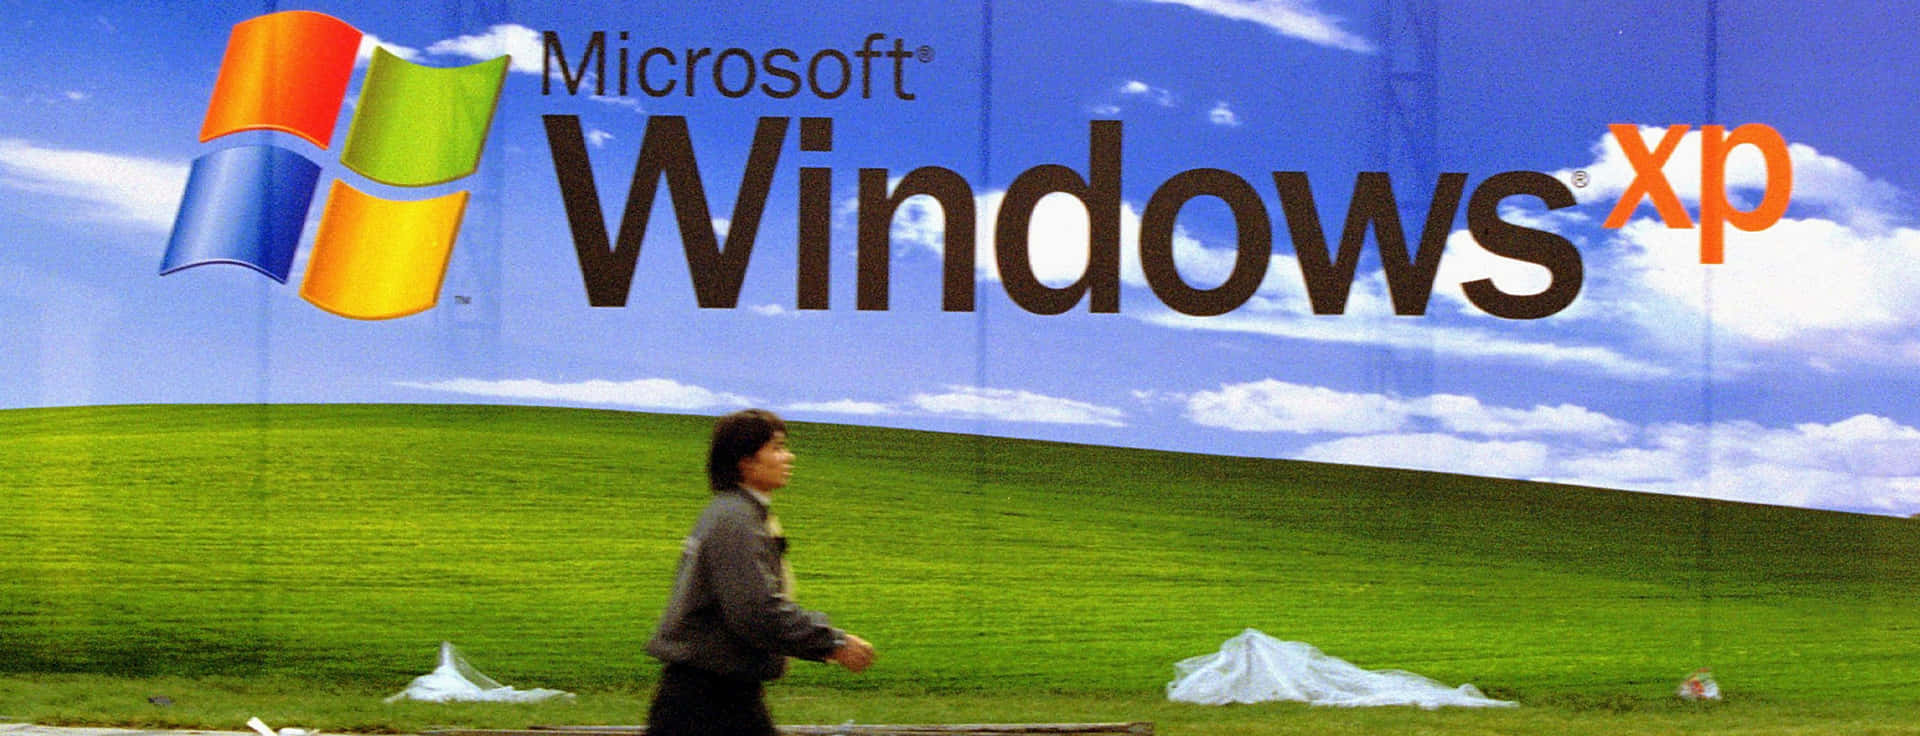 Microsoft Windows XP Logo Wallpaper